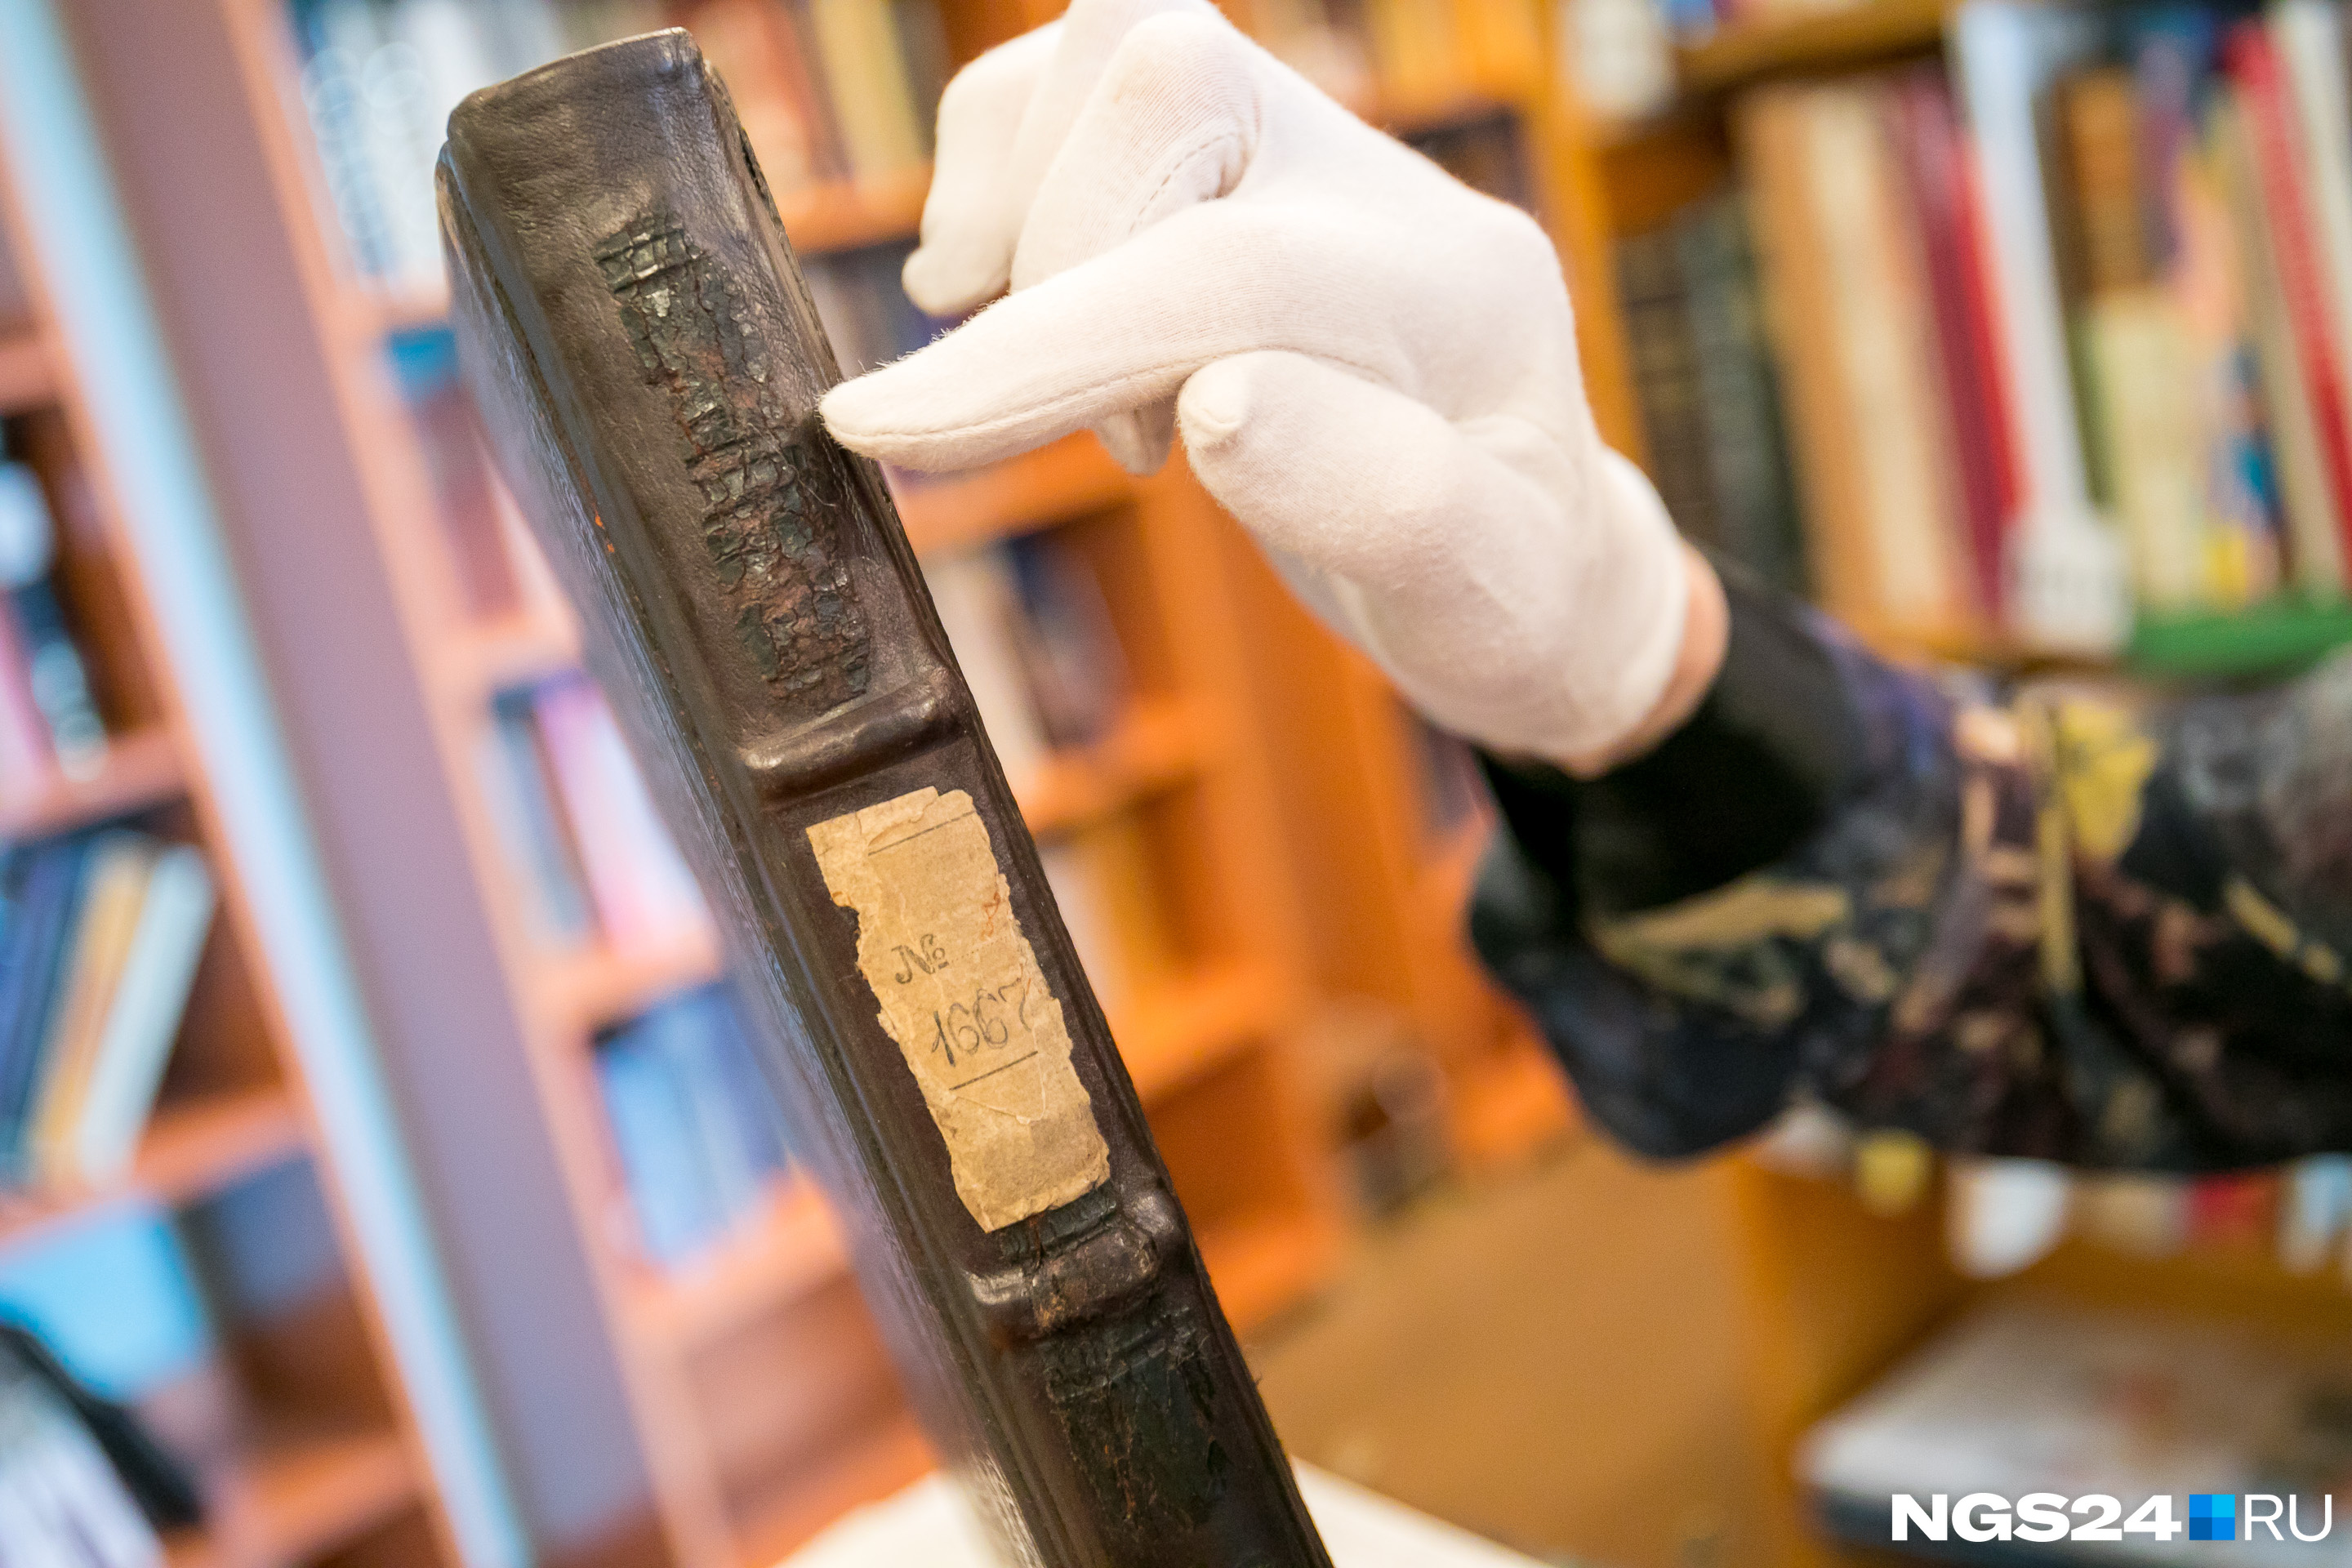 Во время реставрации починили переплет книги — по центру корешка остались кусочки старой кожи